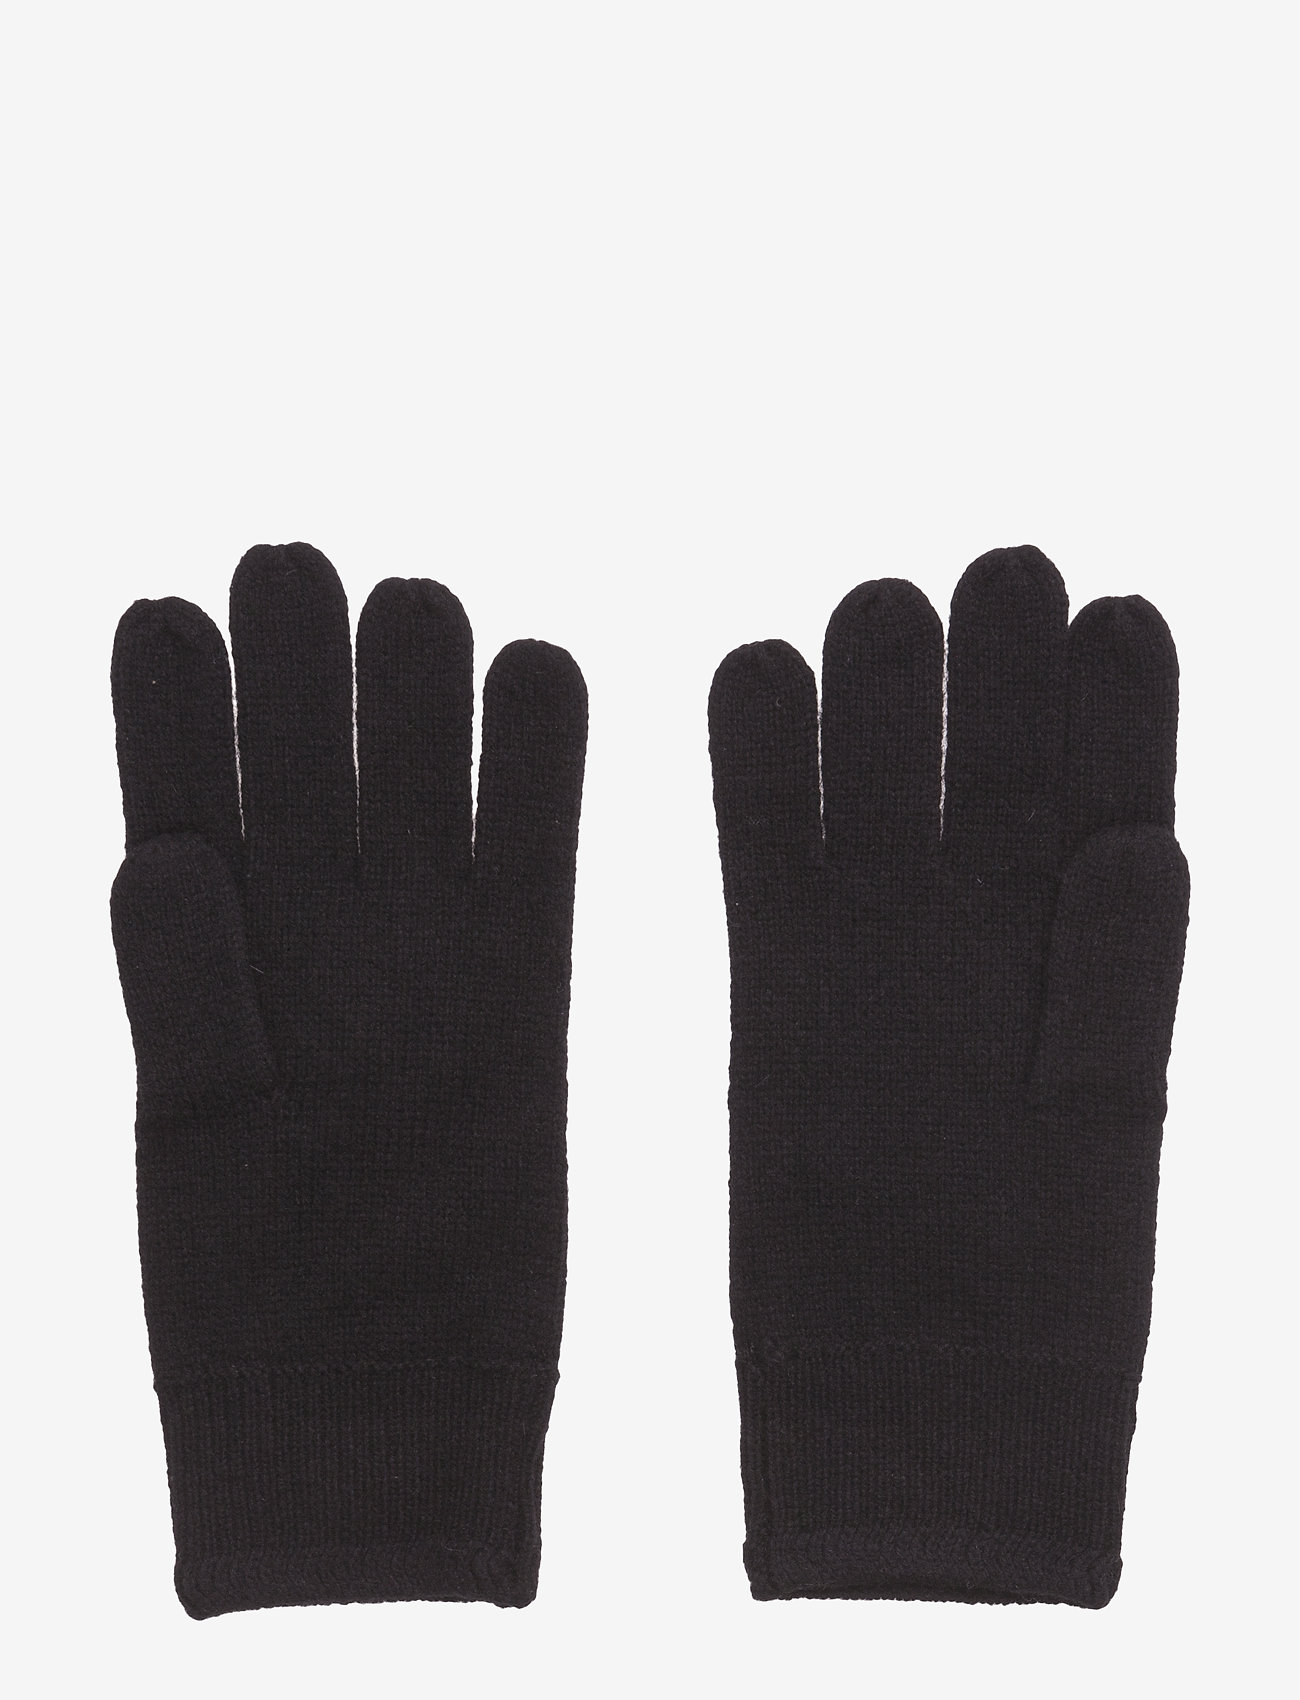 Lyle & Scott - Racked rib gloves - hansker - true black - 1